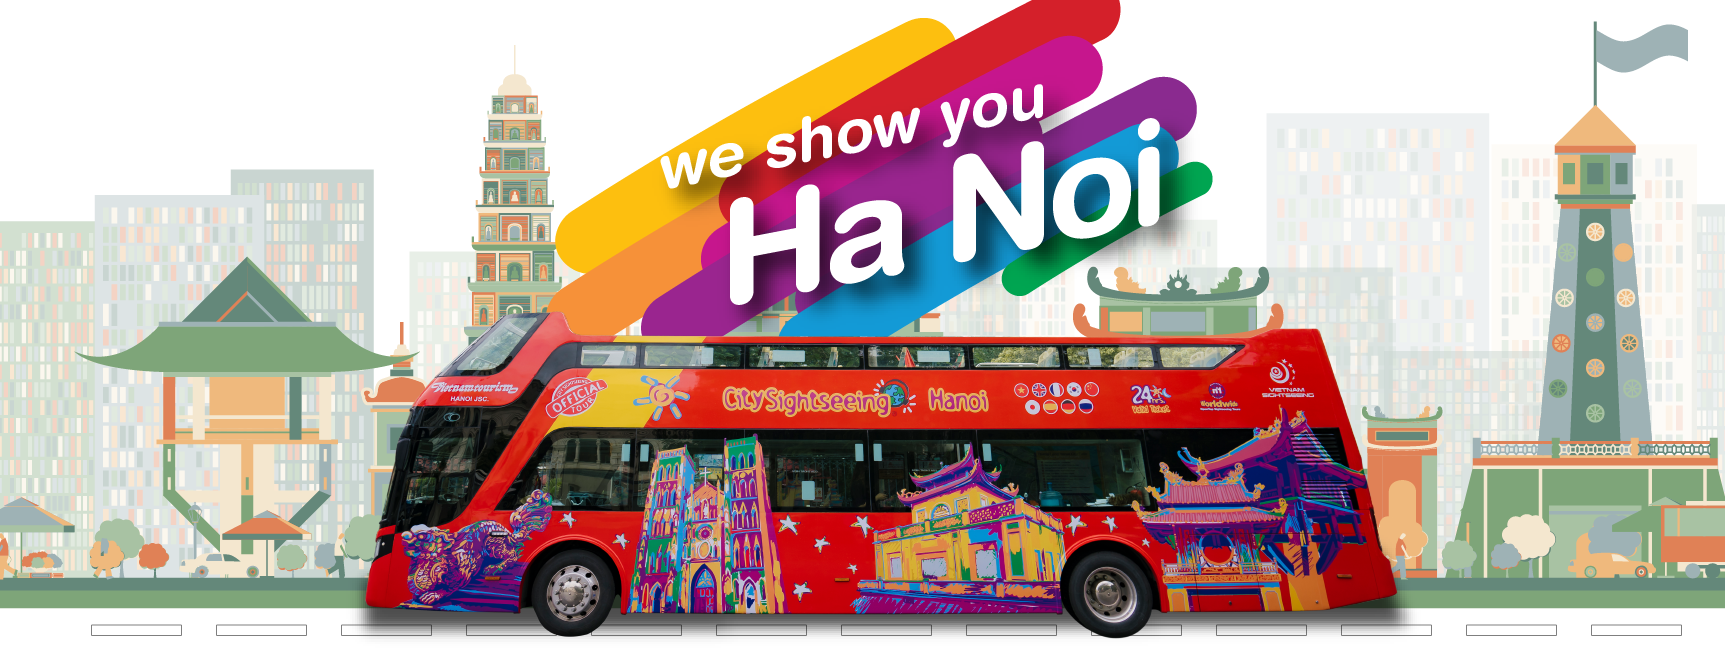 Xe buýt Hà Nội chạy trên những con phố thủ đô đang chờ đón bạn khám phá. Với những tuyến xe buýt đa dạng và tiện lợi, bạn có thể dễ dàng di chuyển đến mọi địa điểm trong thành phố một cách nhanh chóng và tiết kiệm.